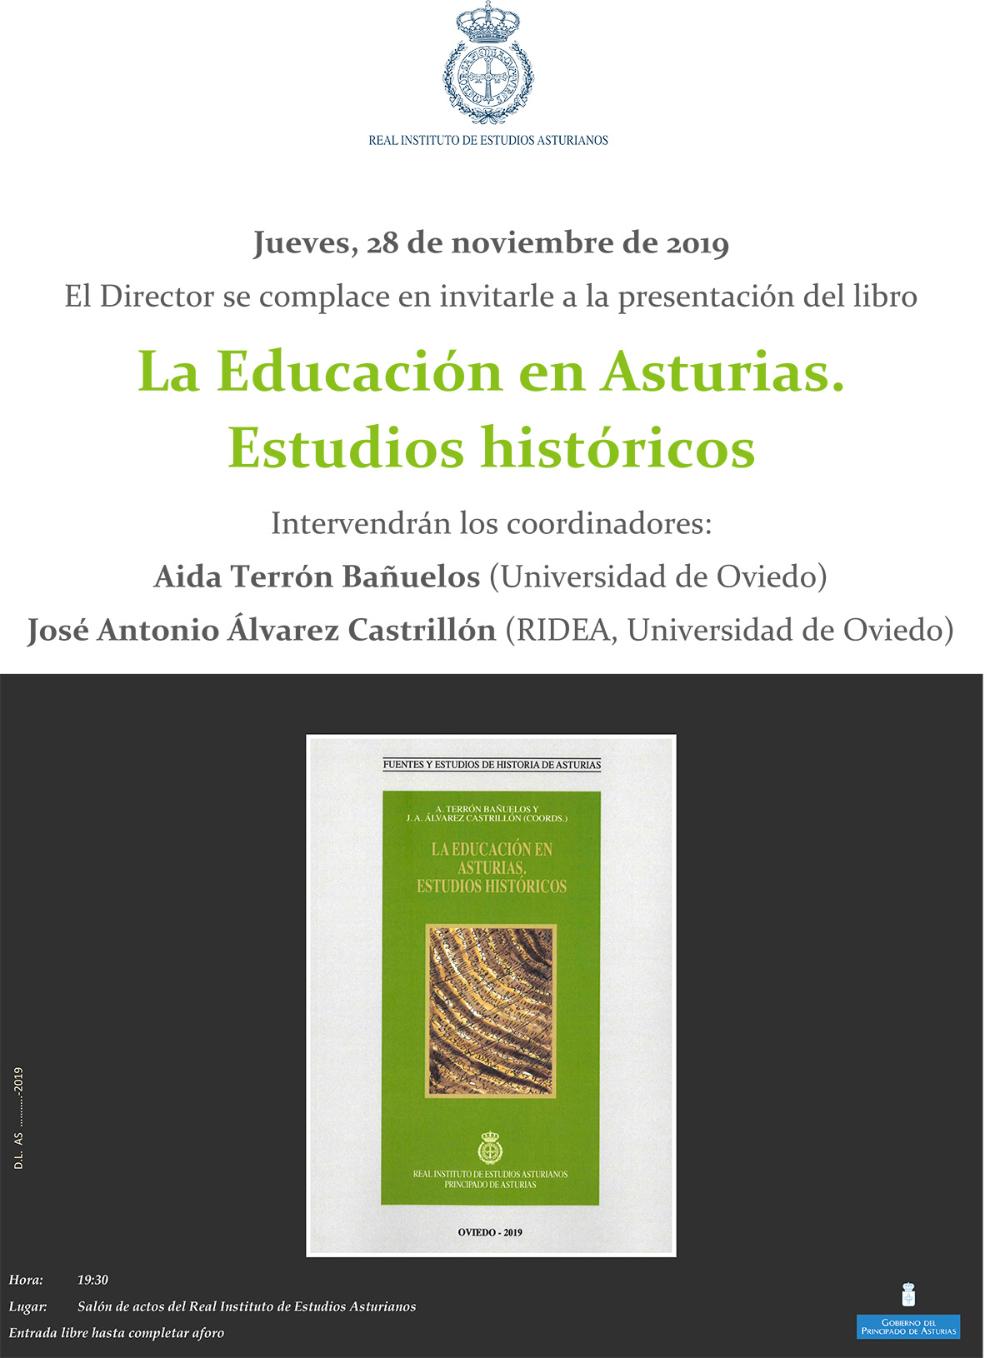 Imagen - Presentación del libro La Educación en Asturias. Estudios históricos